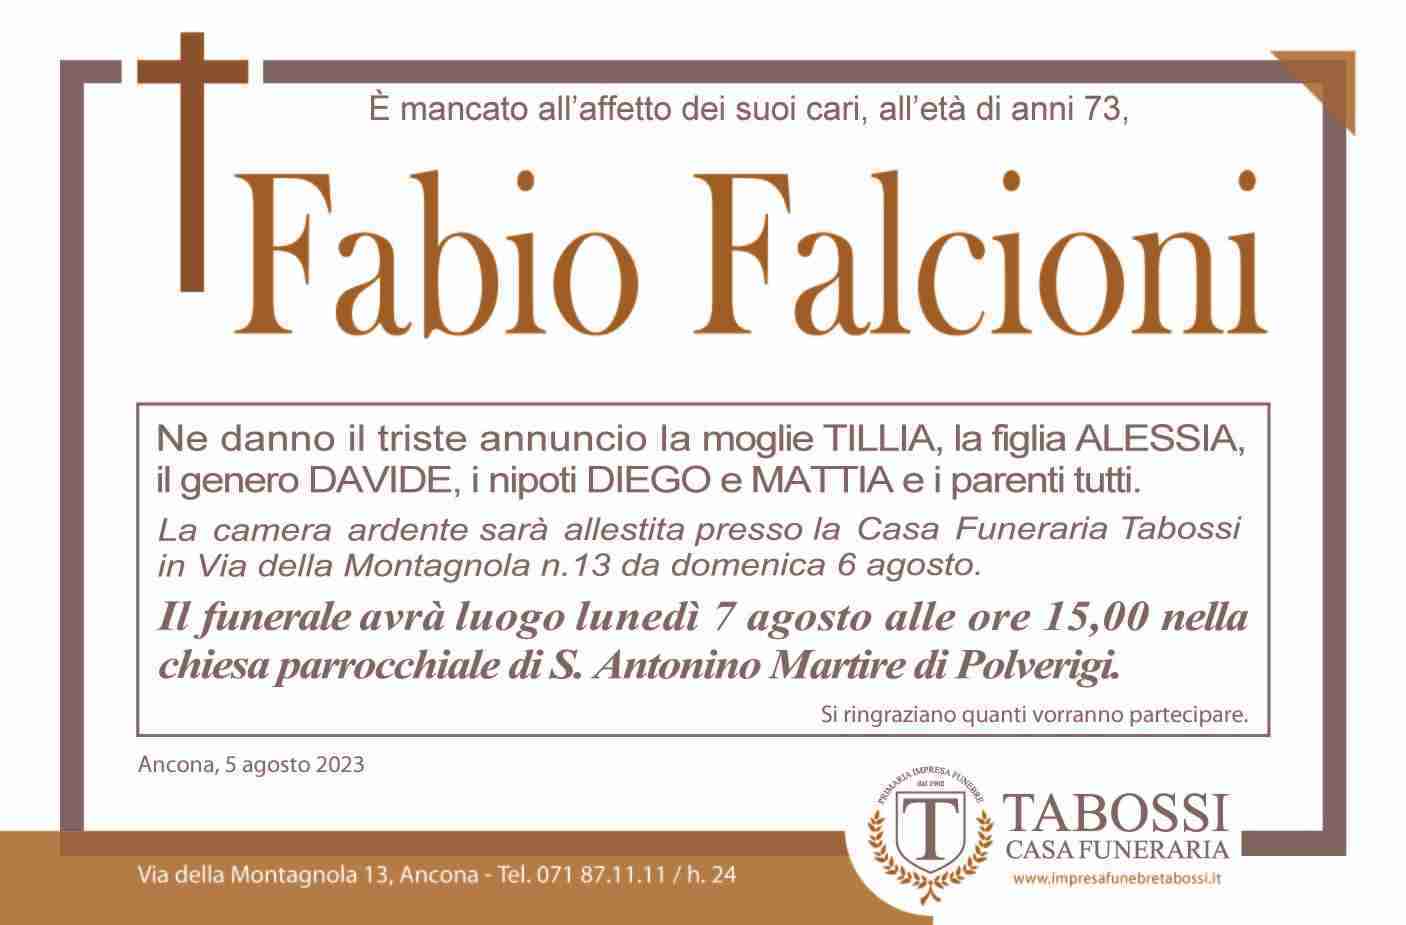 Fabio Falcioni